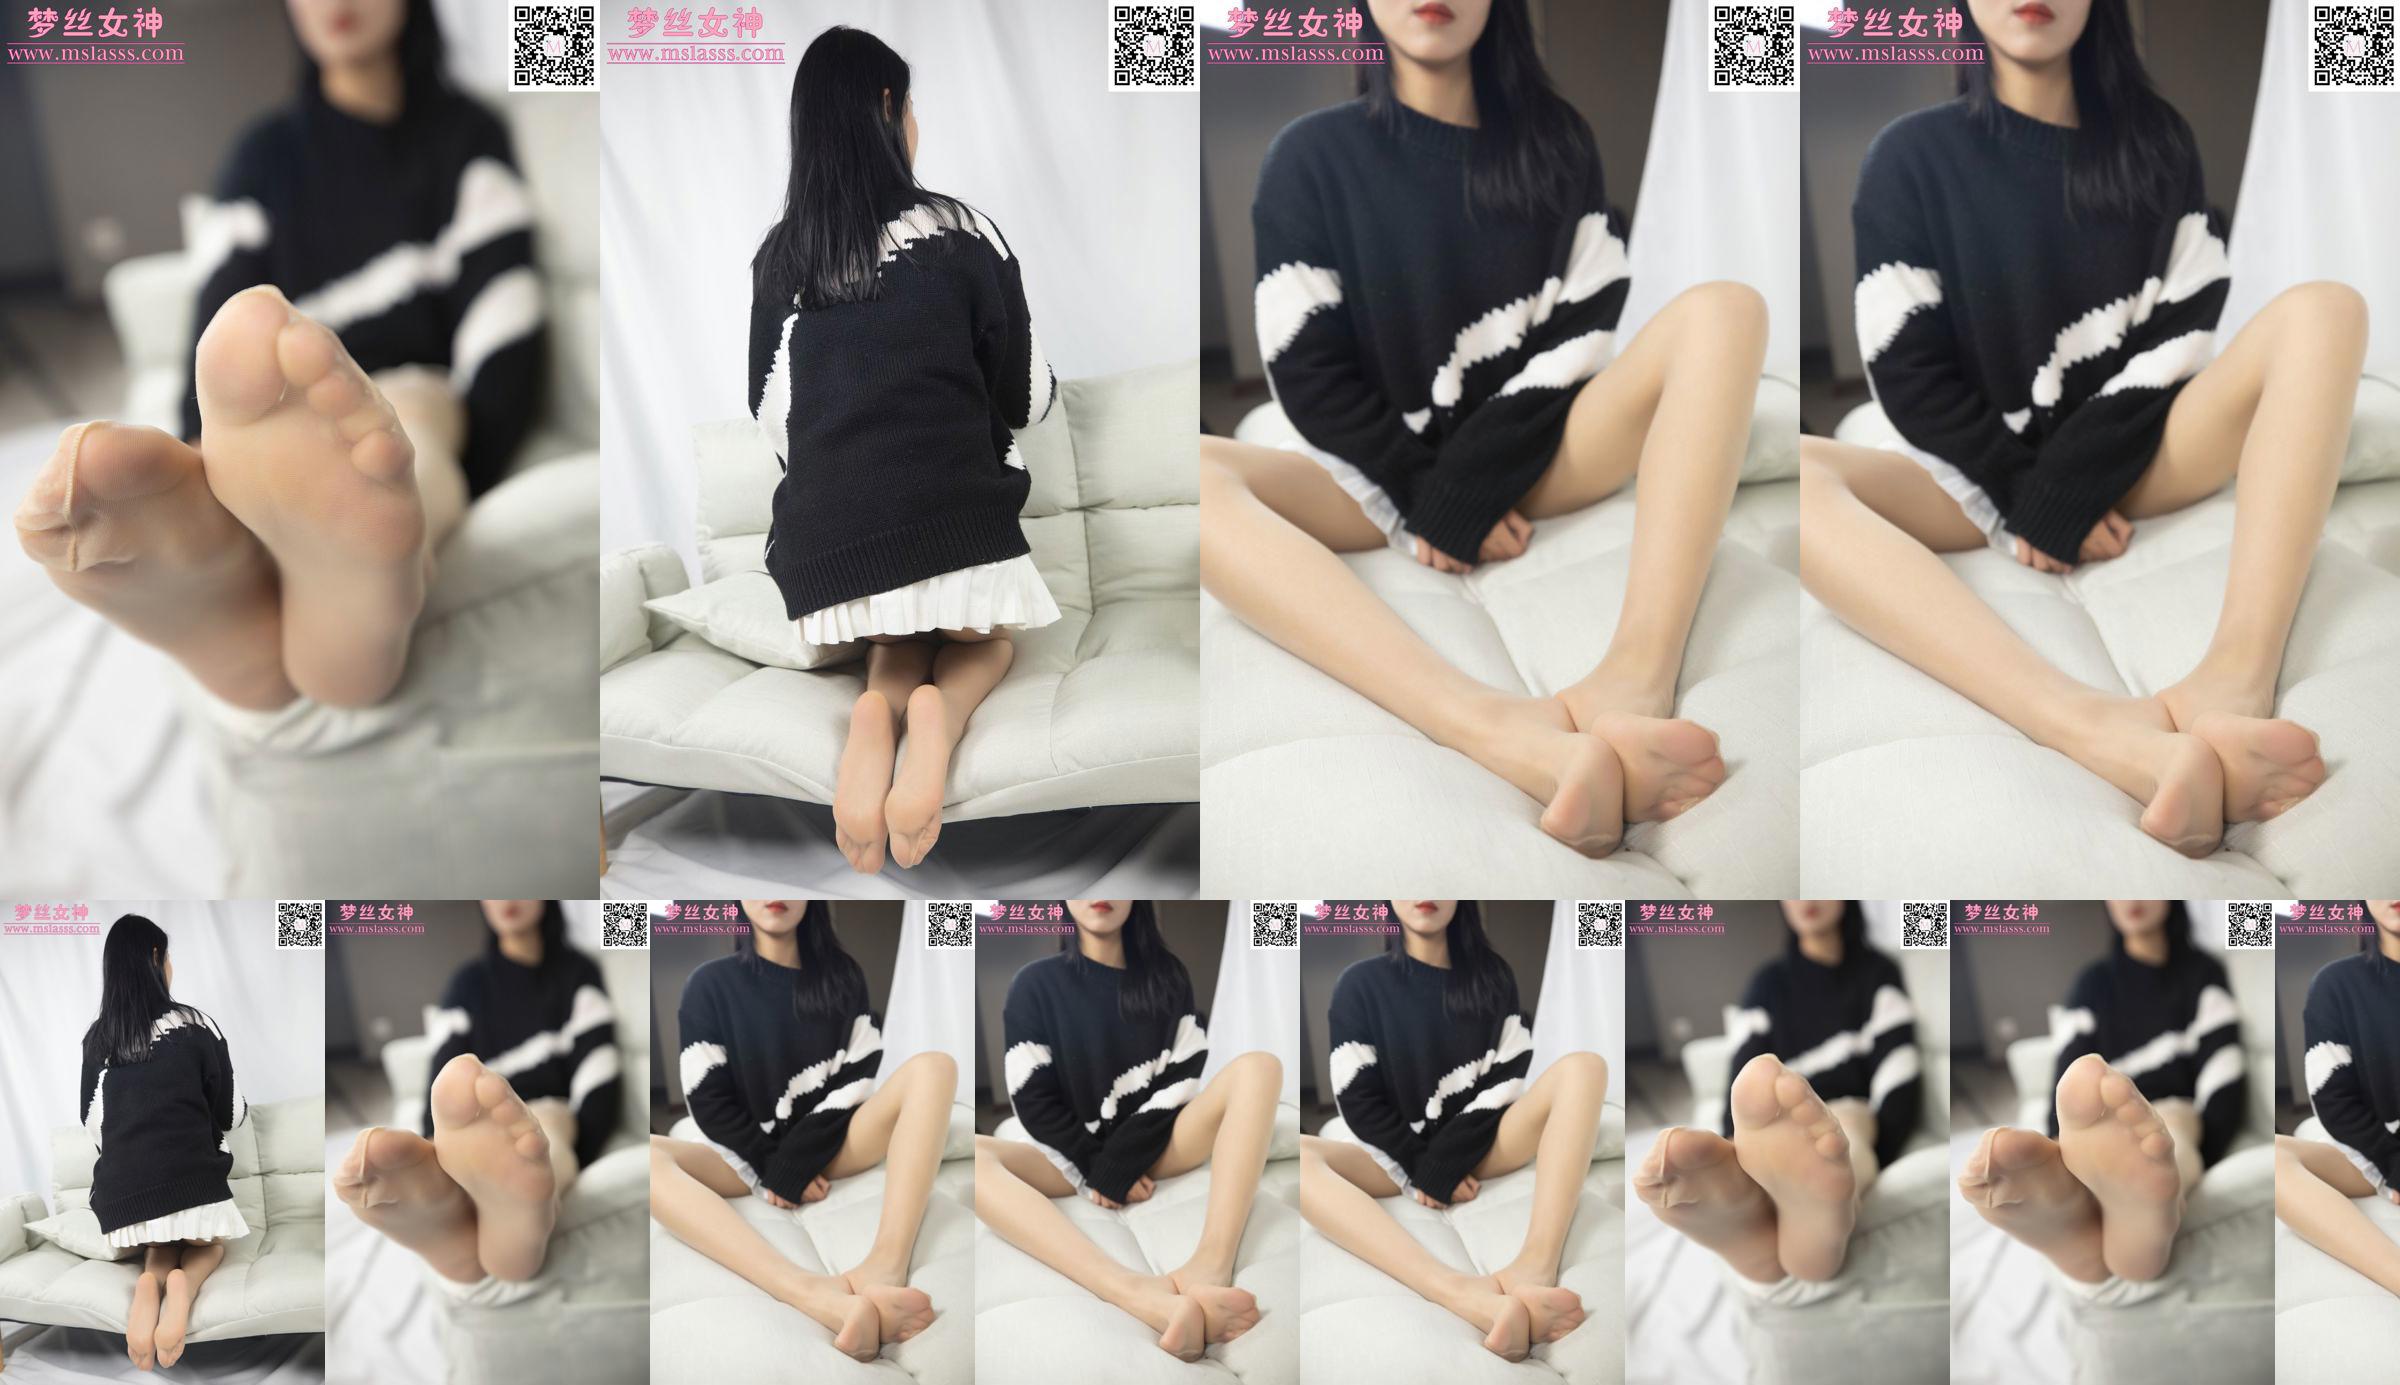 [Goddess of Dreams MSLASS] Áo len của Xiaomu không thể ngăn được đôi chân dài miên man của cô nàng No.5b8280 Trang 2